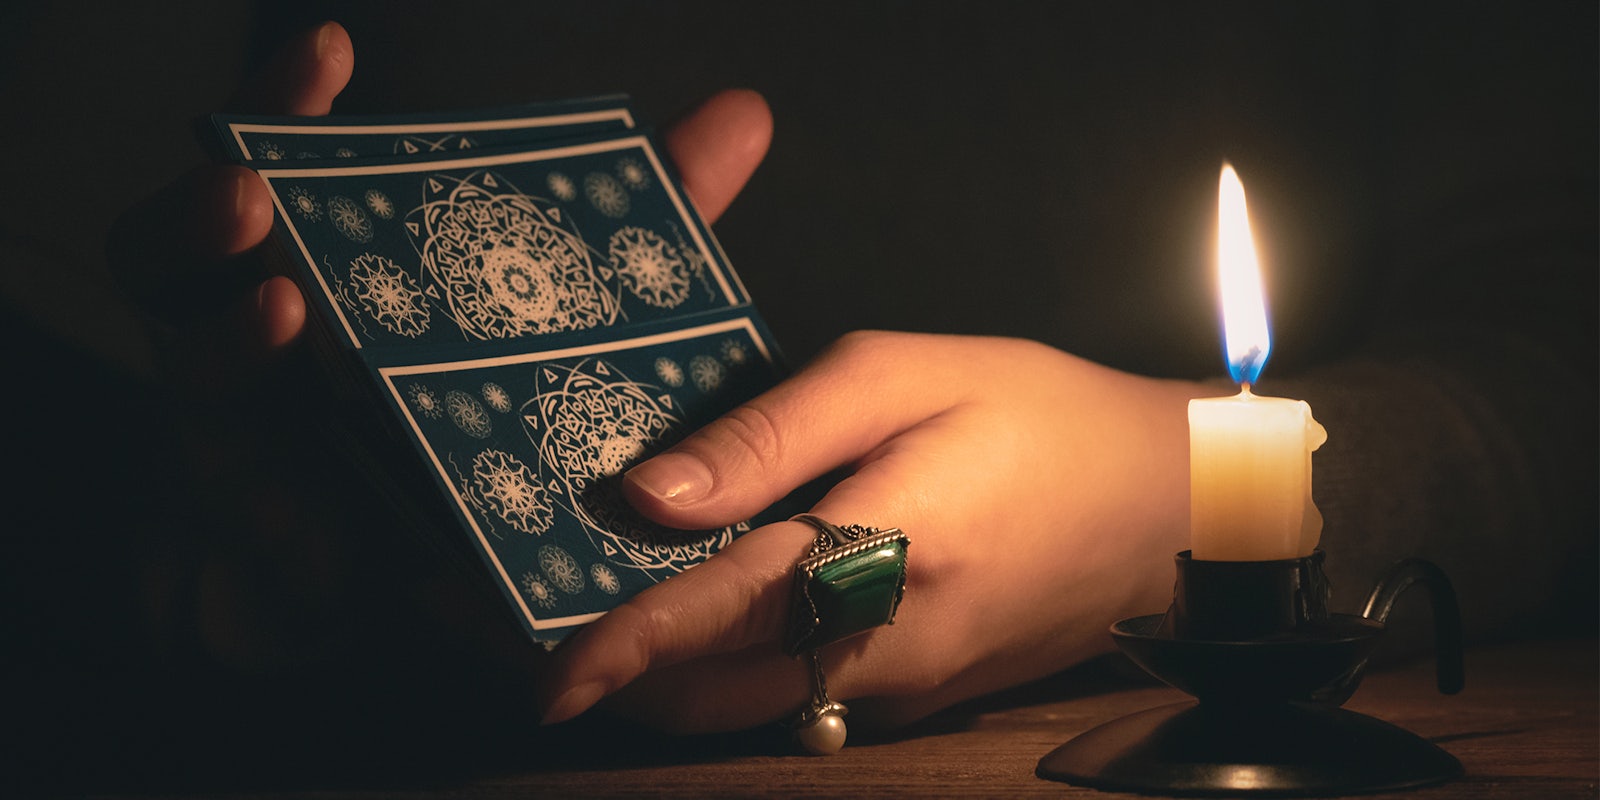 Hands shuffling a tarot deck in candlelight.